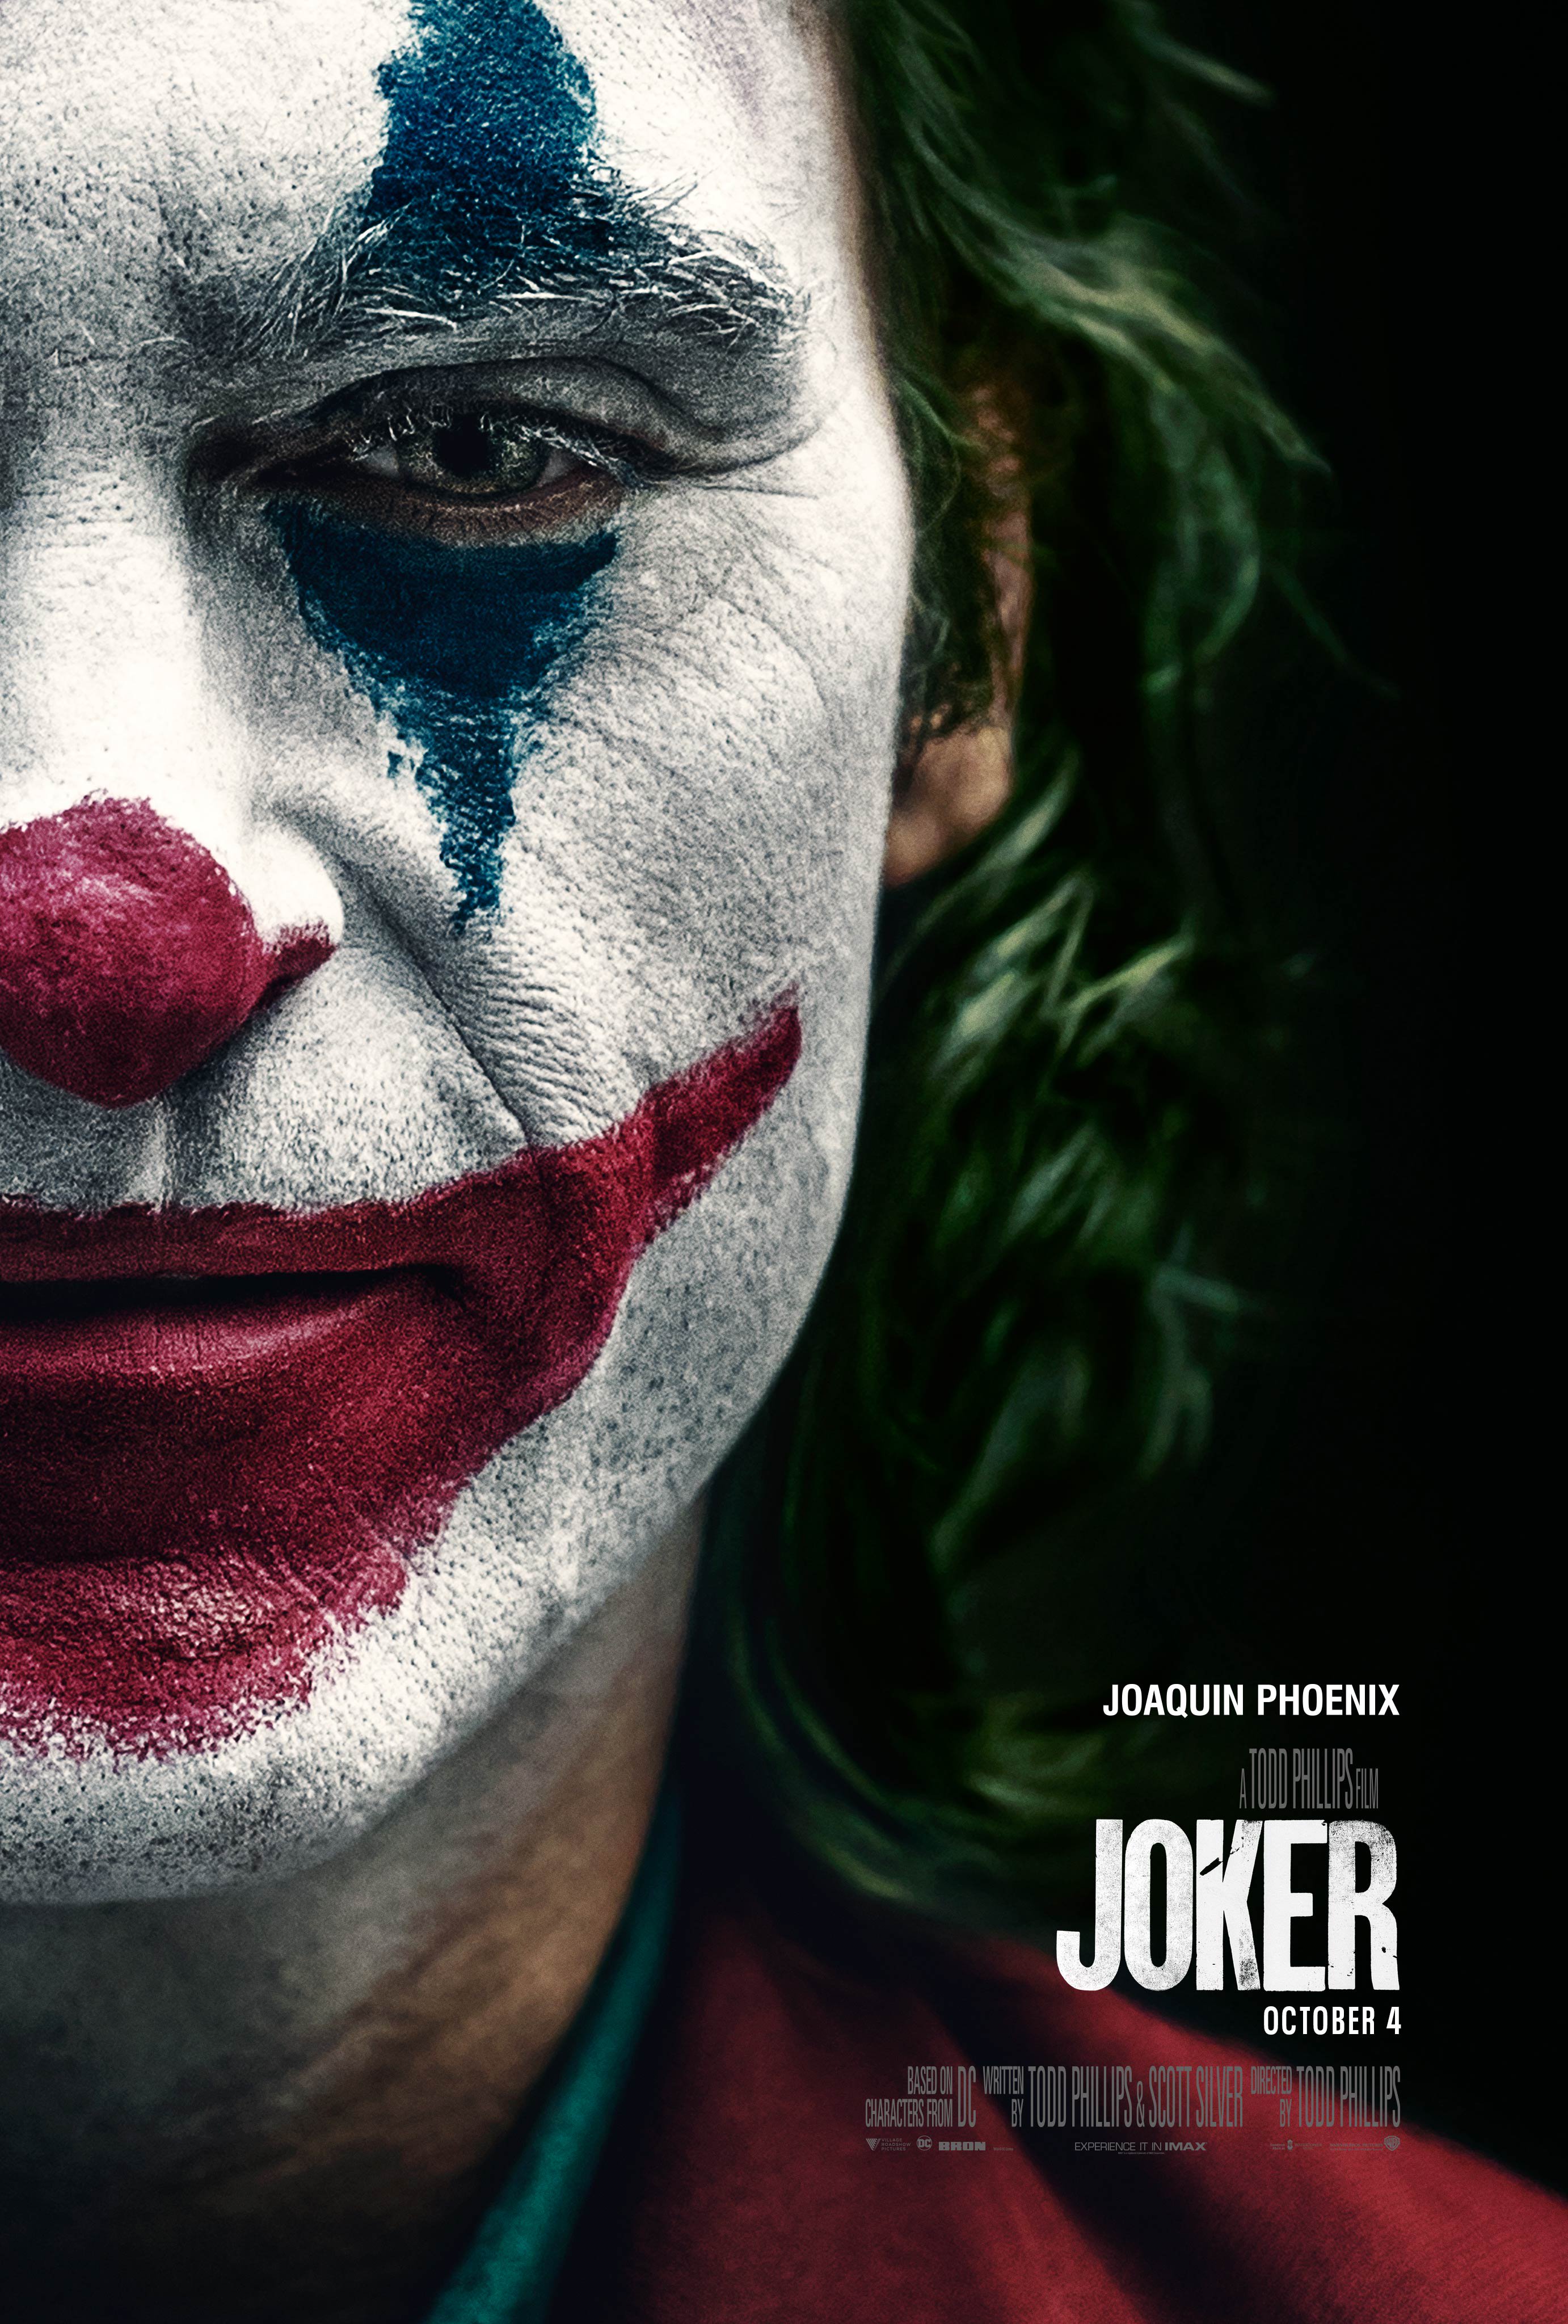 Résultat de recherche d'images pour "Joker Todd Phillips poster"